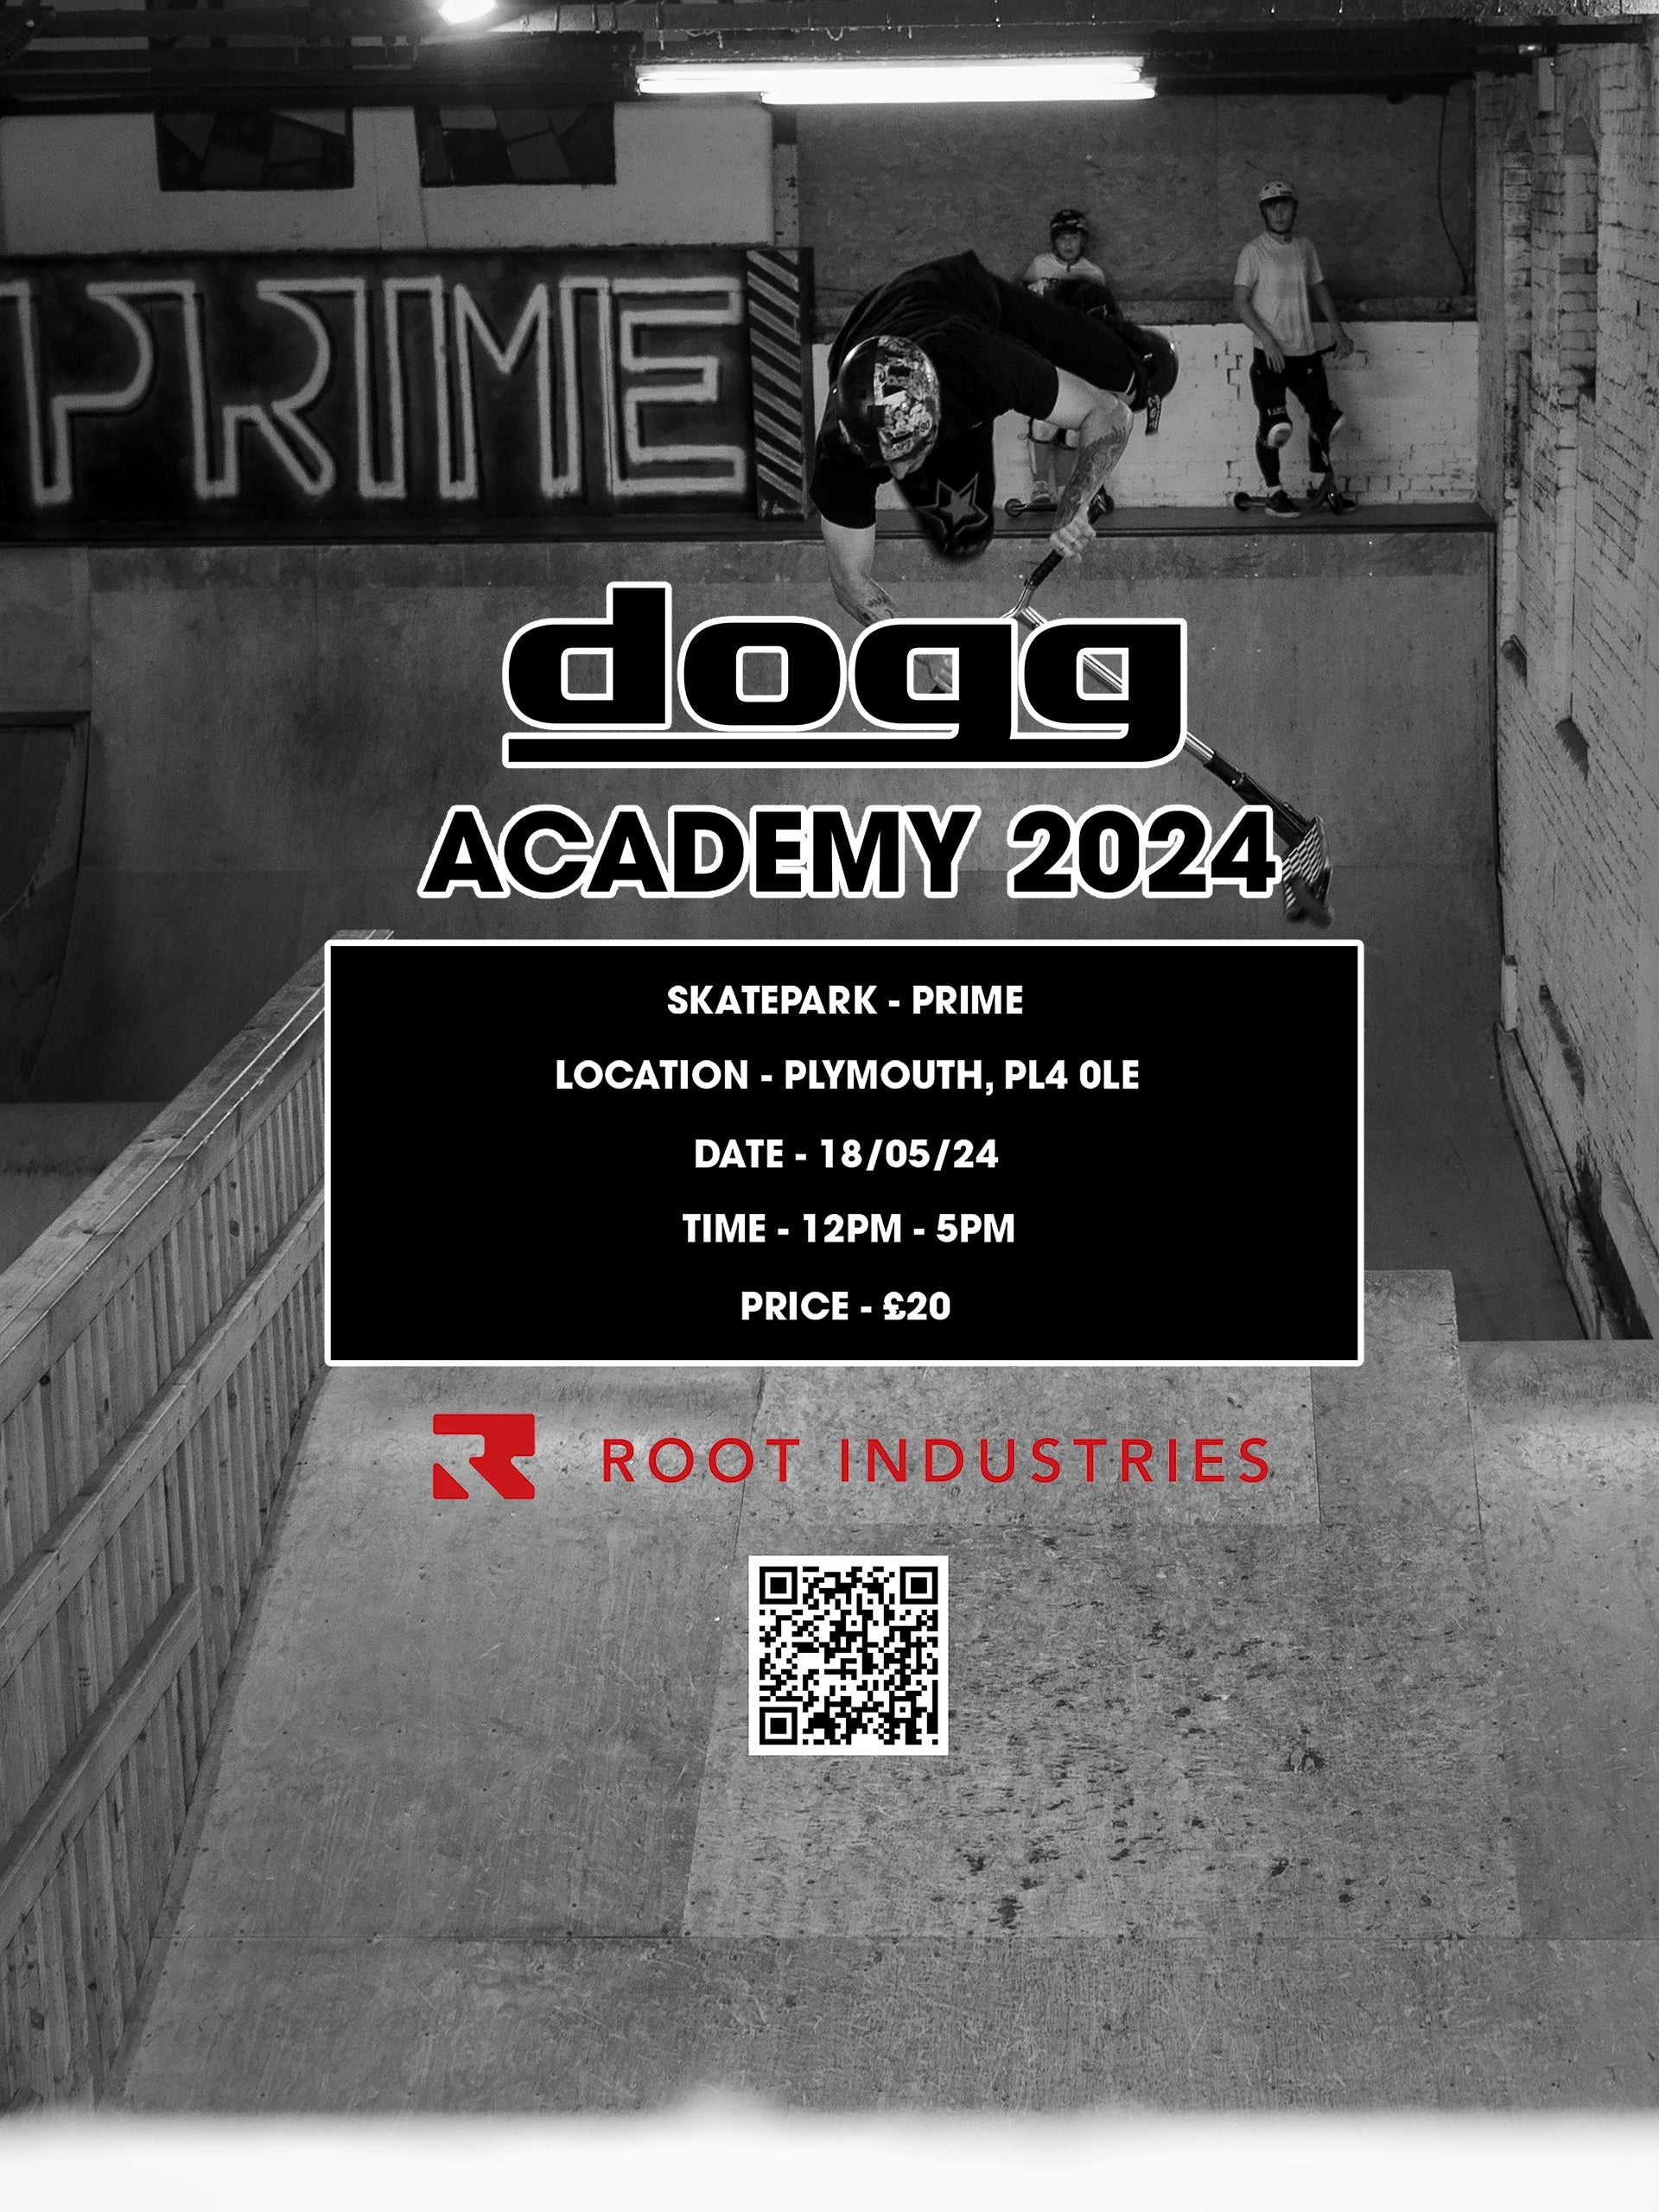 Dogg Academy at Prime Skatepark, Plymouth, Devon.